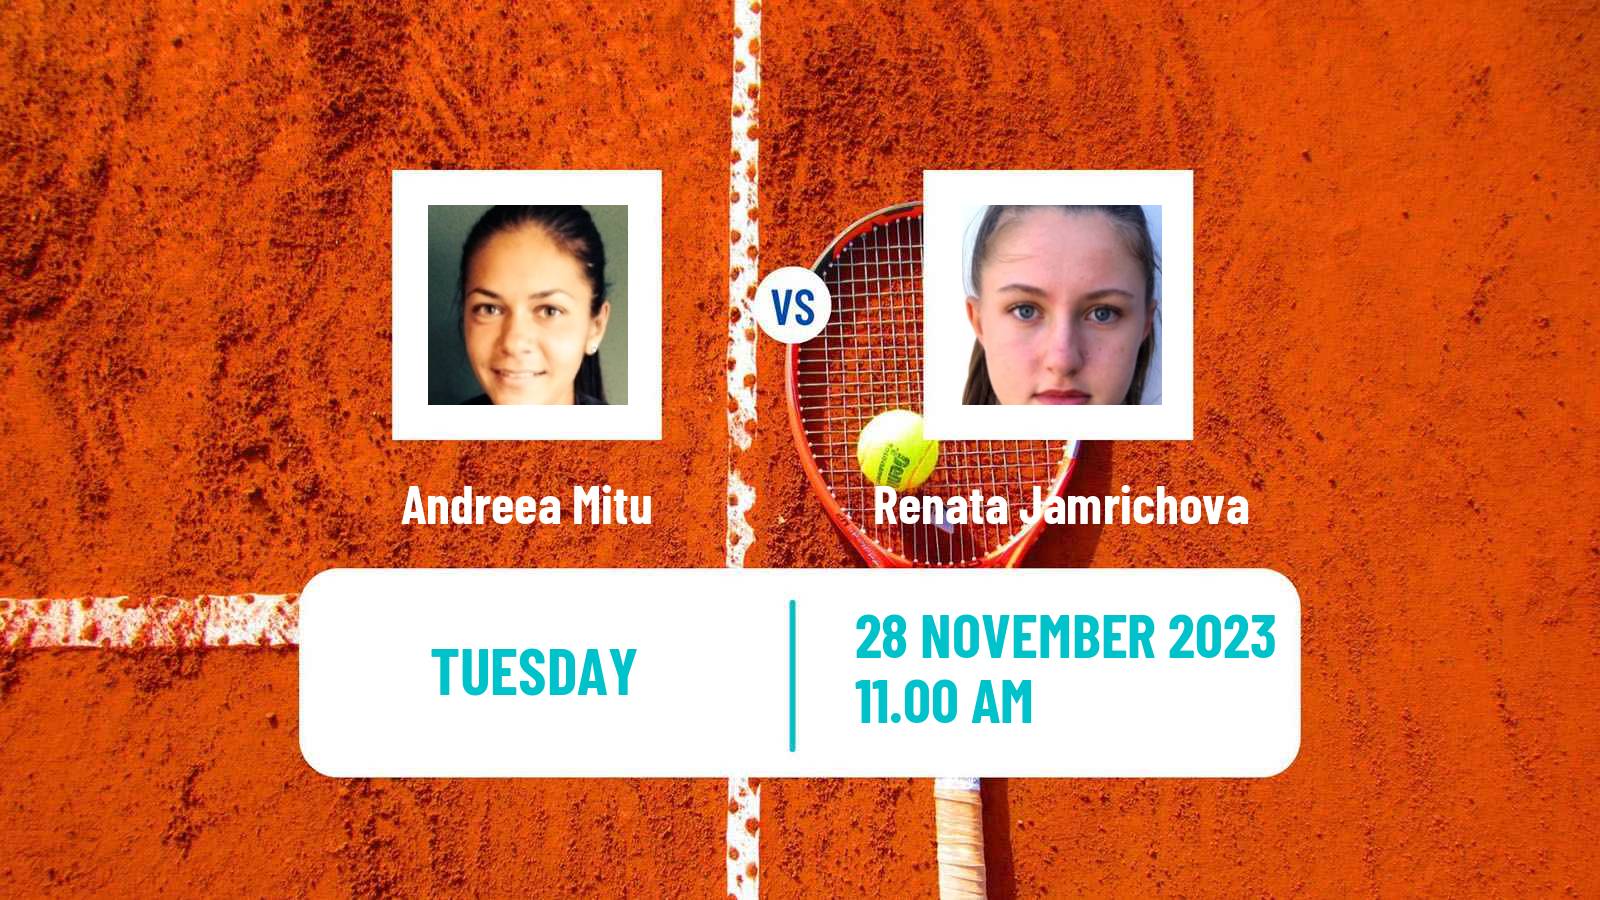 Tennis ITF W60 Trnava 3 Women 2023 Andreea Mitu - Renata Jamrichova